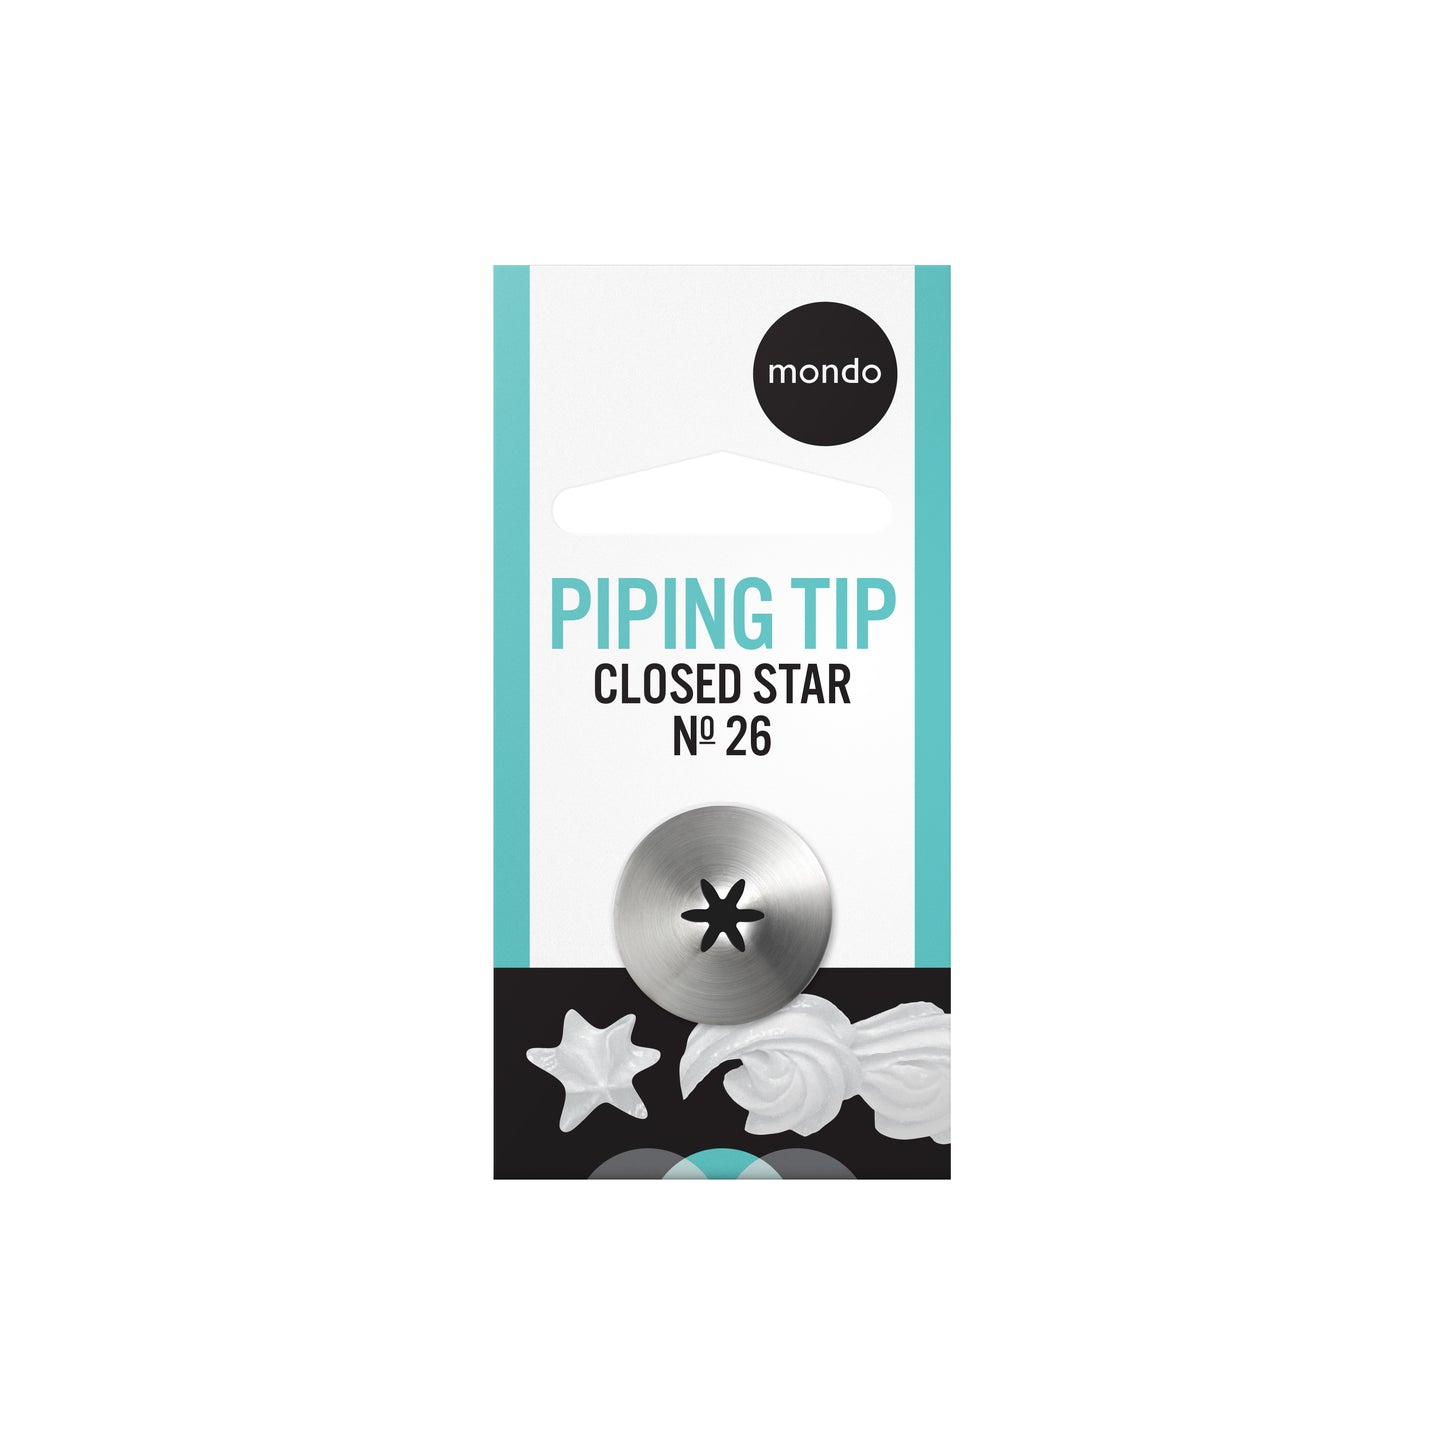 Mondo Closed Star Piping Tip #26